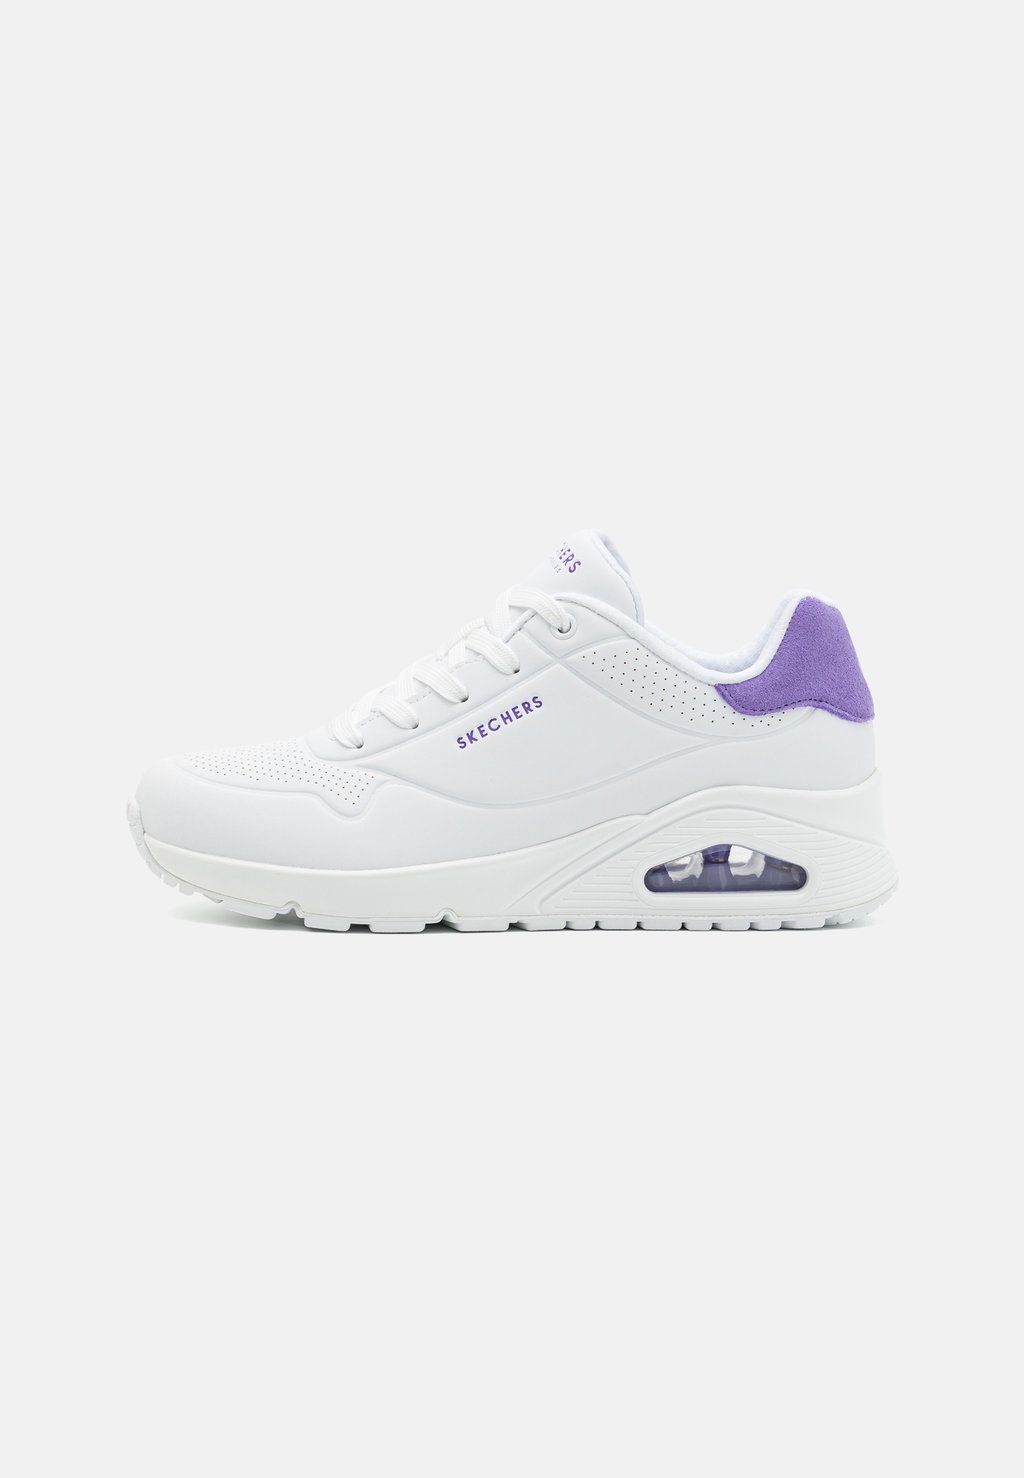 Низкие кроссовки Uno Skechers Sport, цвет white/purple кроссовки skechers sport uno white